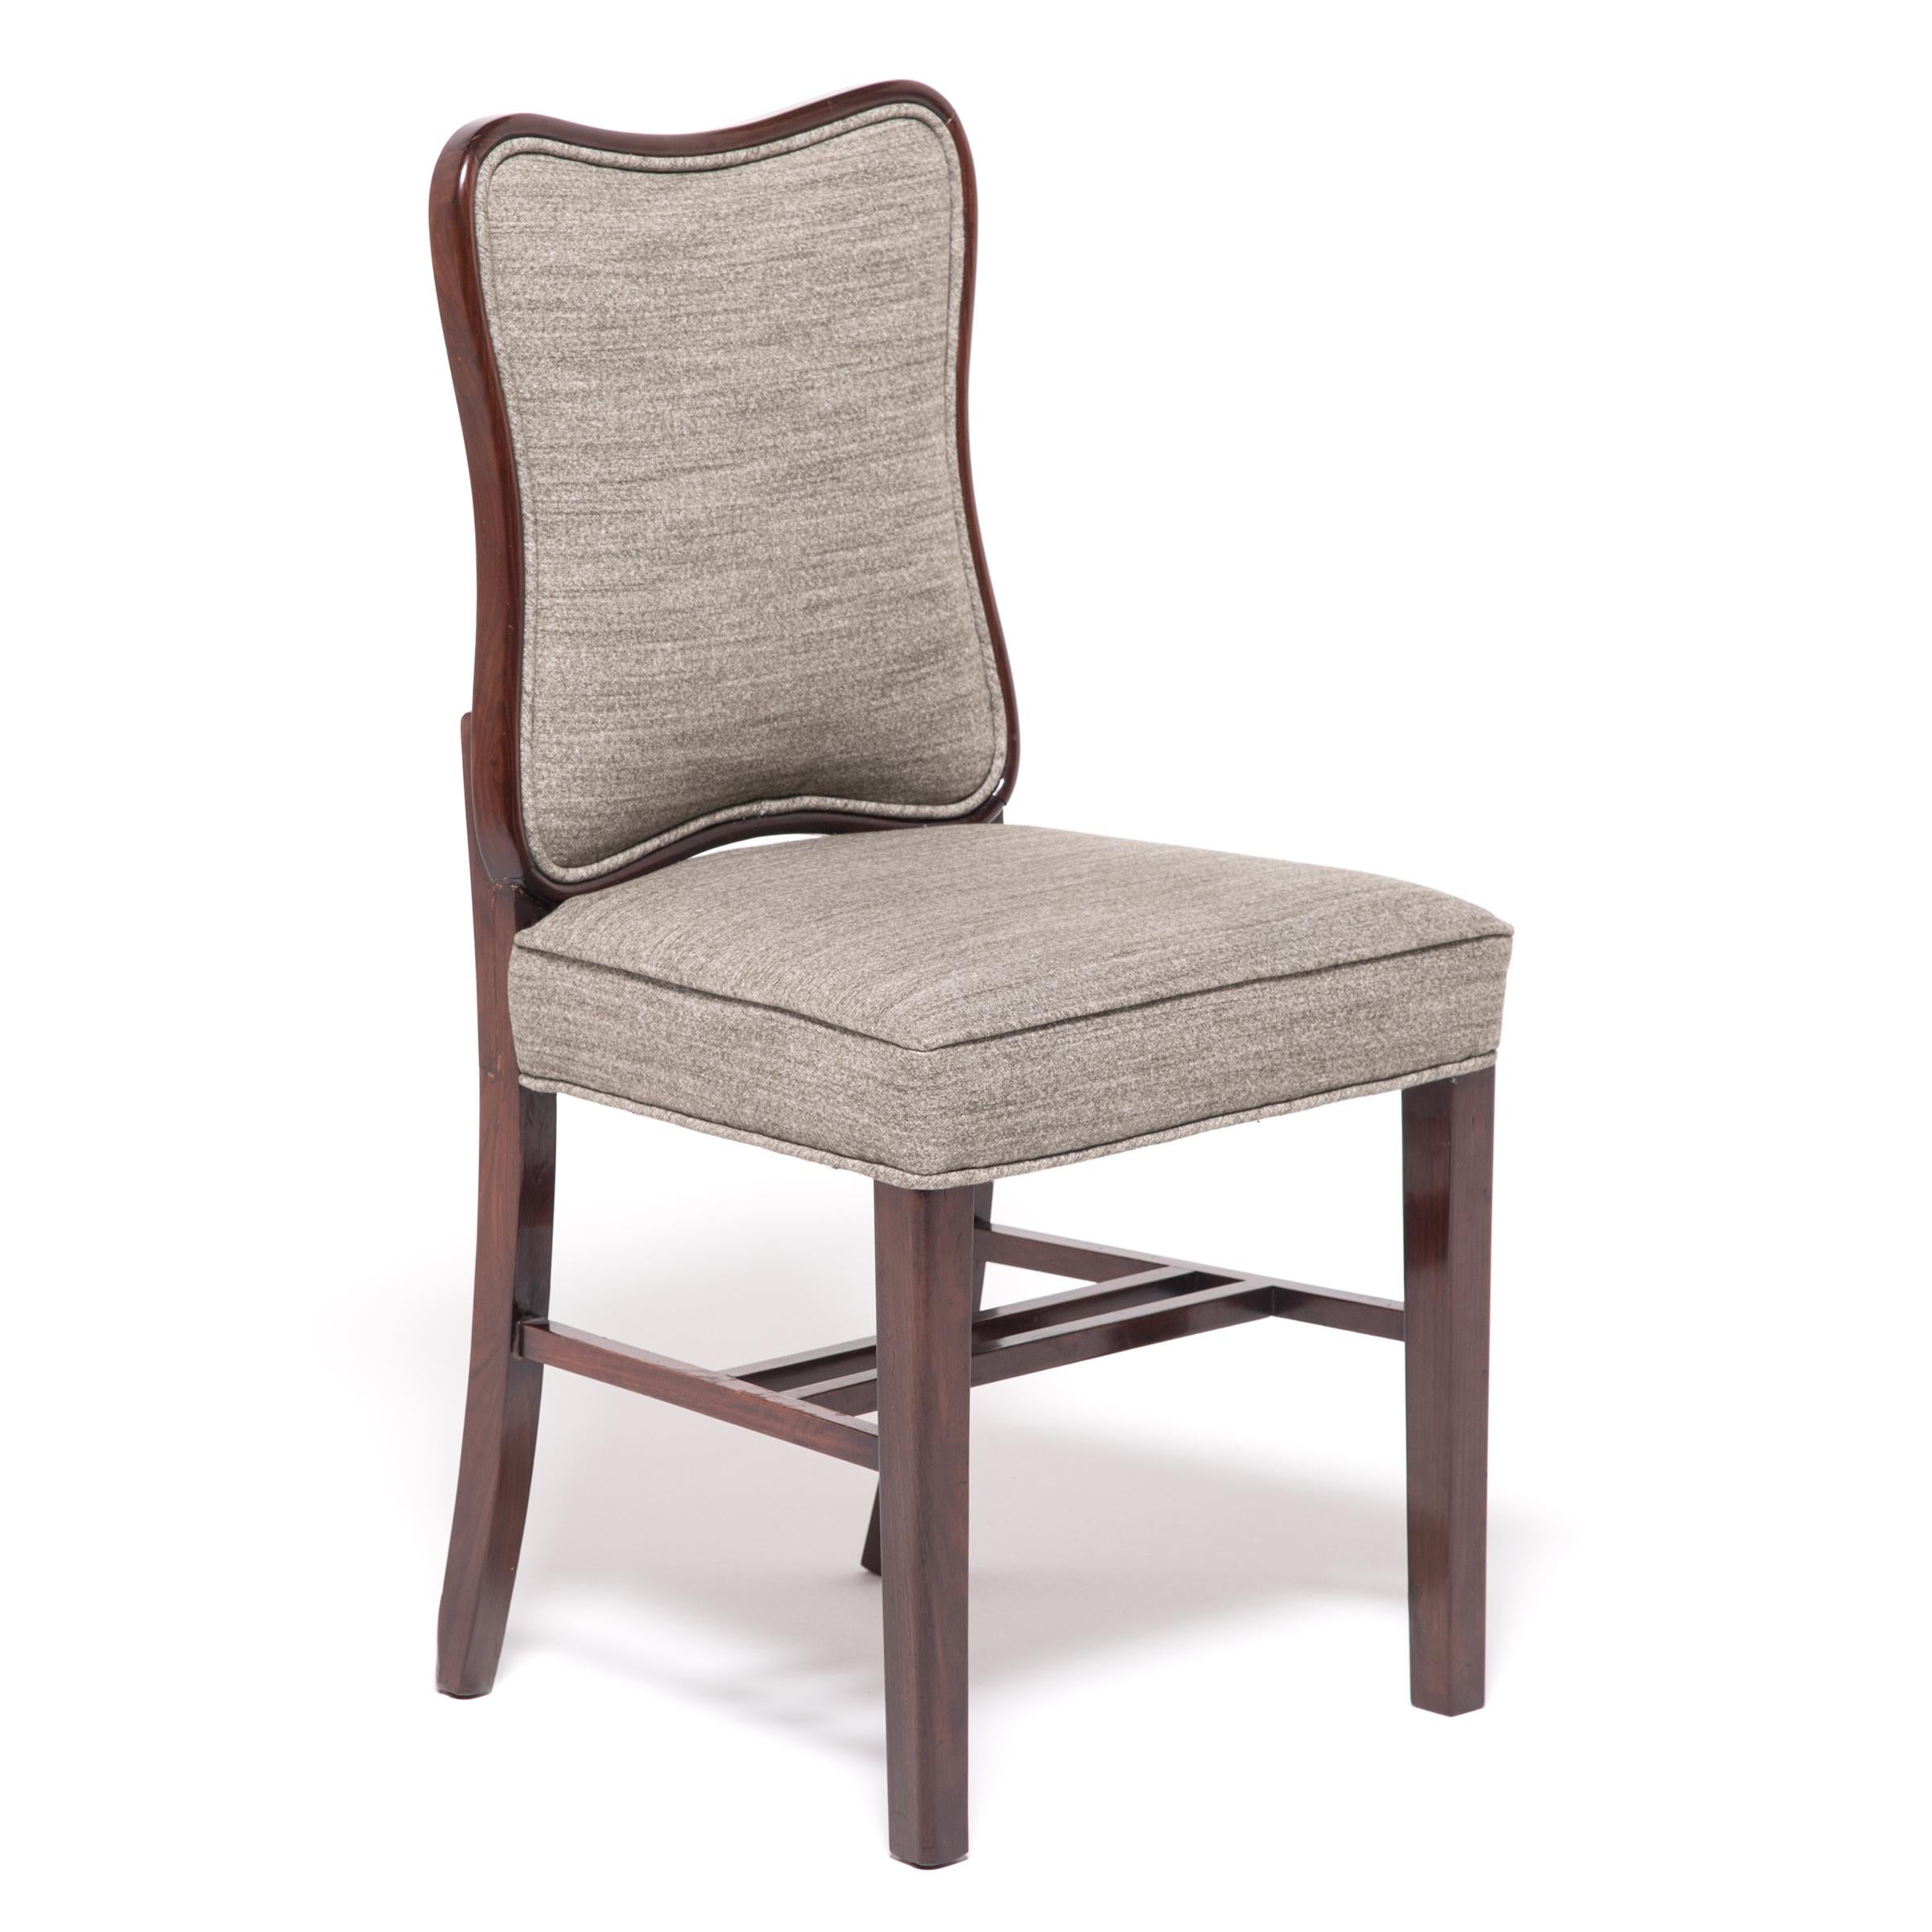 Diese einzigartigen Stühle, die in den 1930er Jahren hergestellt wurden, um den weltweiten Hunger nach Art Déco zu stillen, verbinden den stromlinienförmigen Stil der Epoche mit einer klassischen chinesischen Ästhetik. Die schönen Hartholzrahmen mit